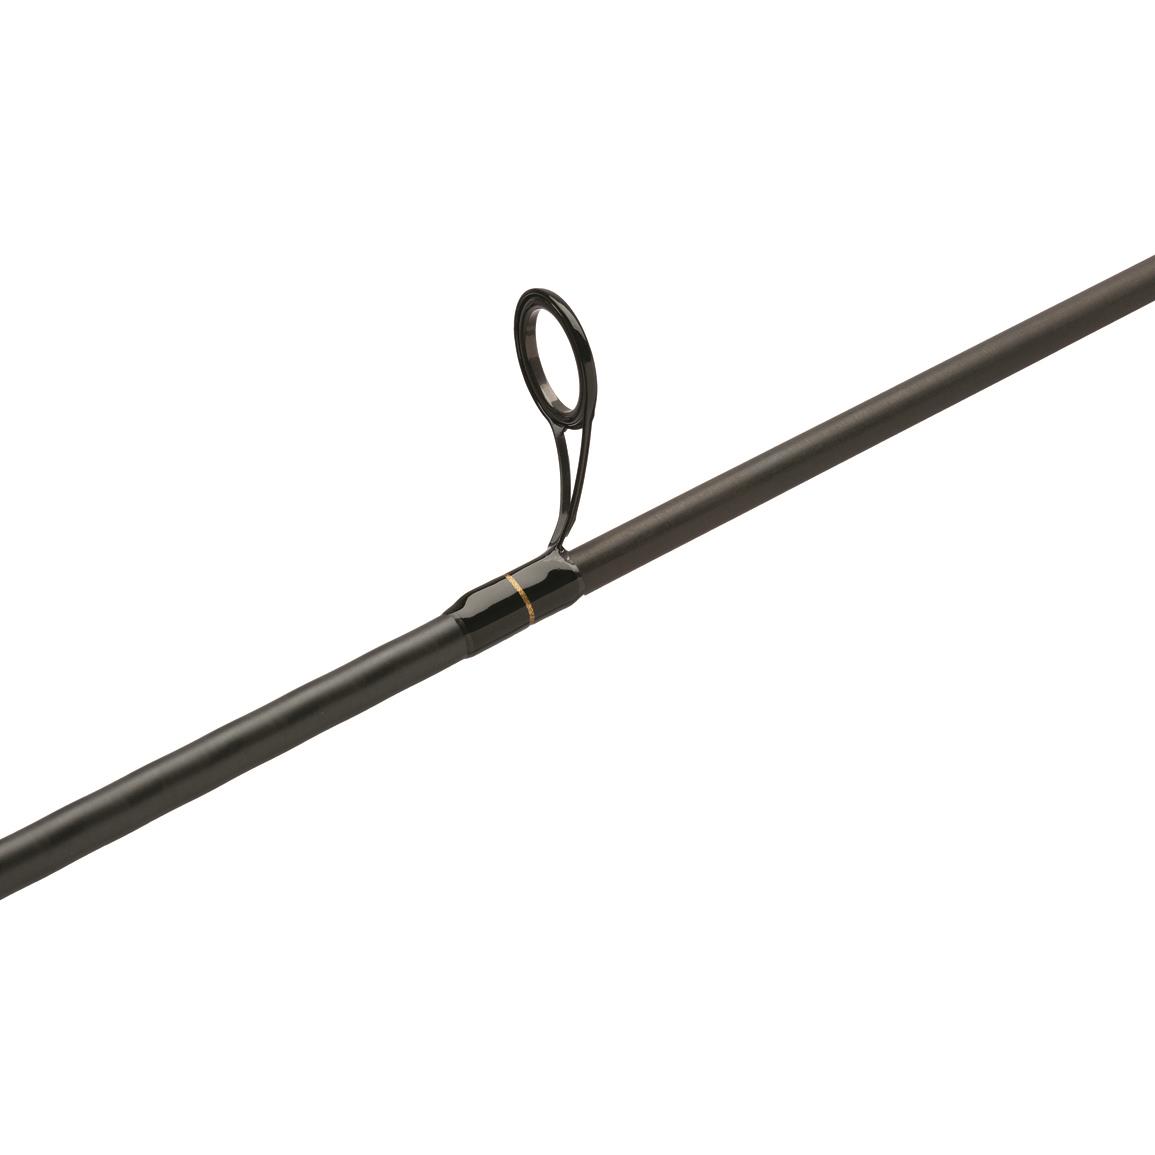 Shimano Compre Walleye 6'6'' Medium 2 Pieces Spinning Rod